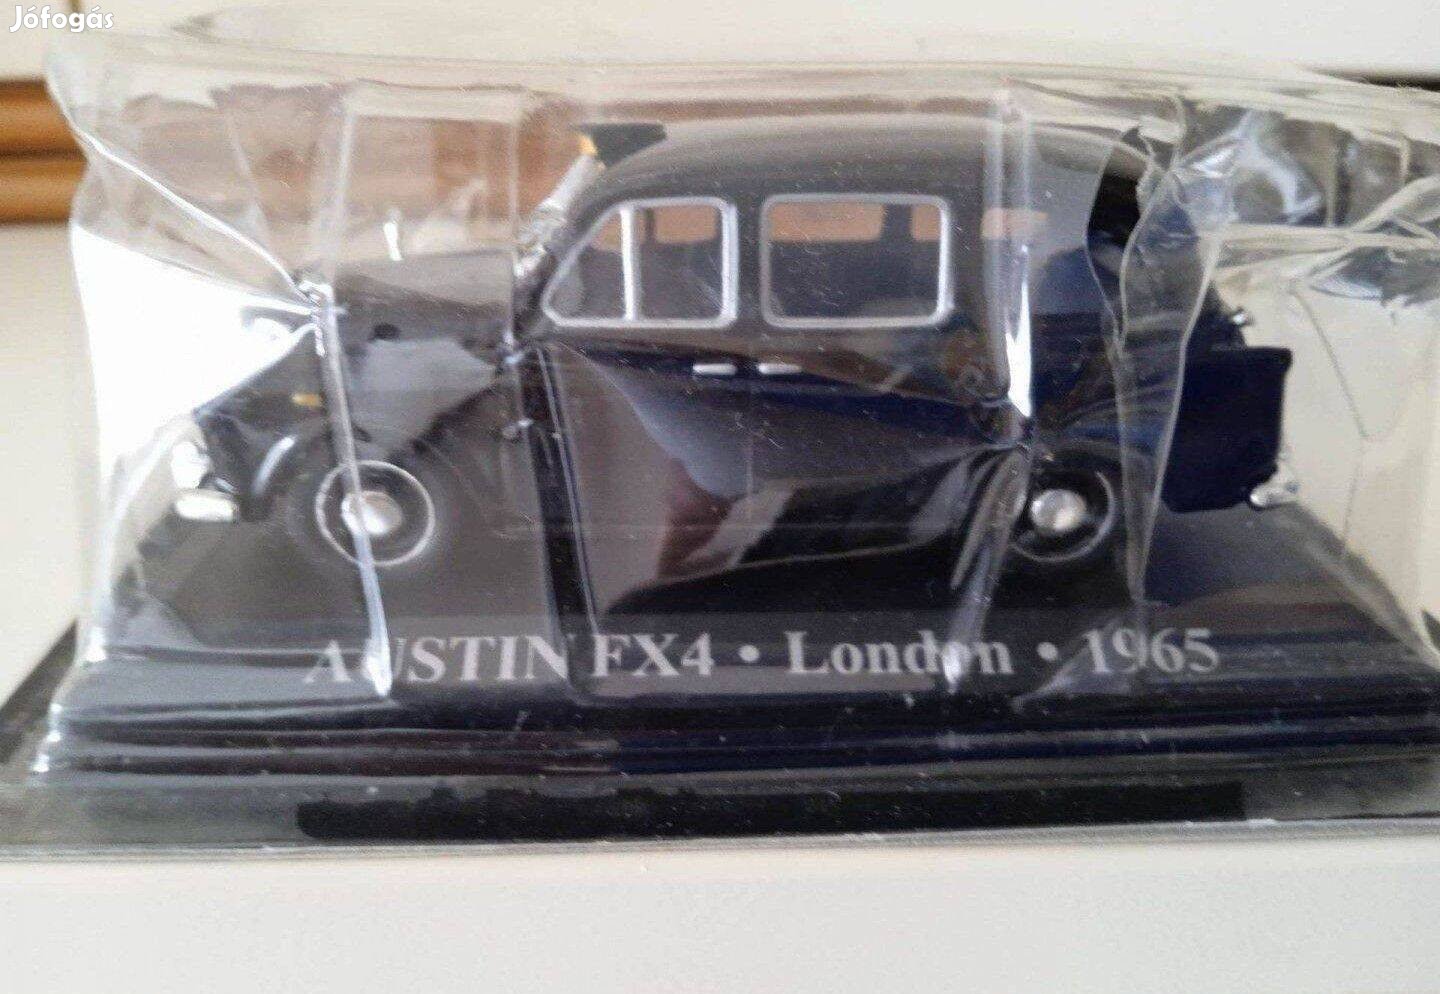 Austin FX 4 London Taxi Altaya kisauto modell 1/43 Eladó